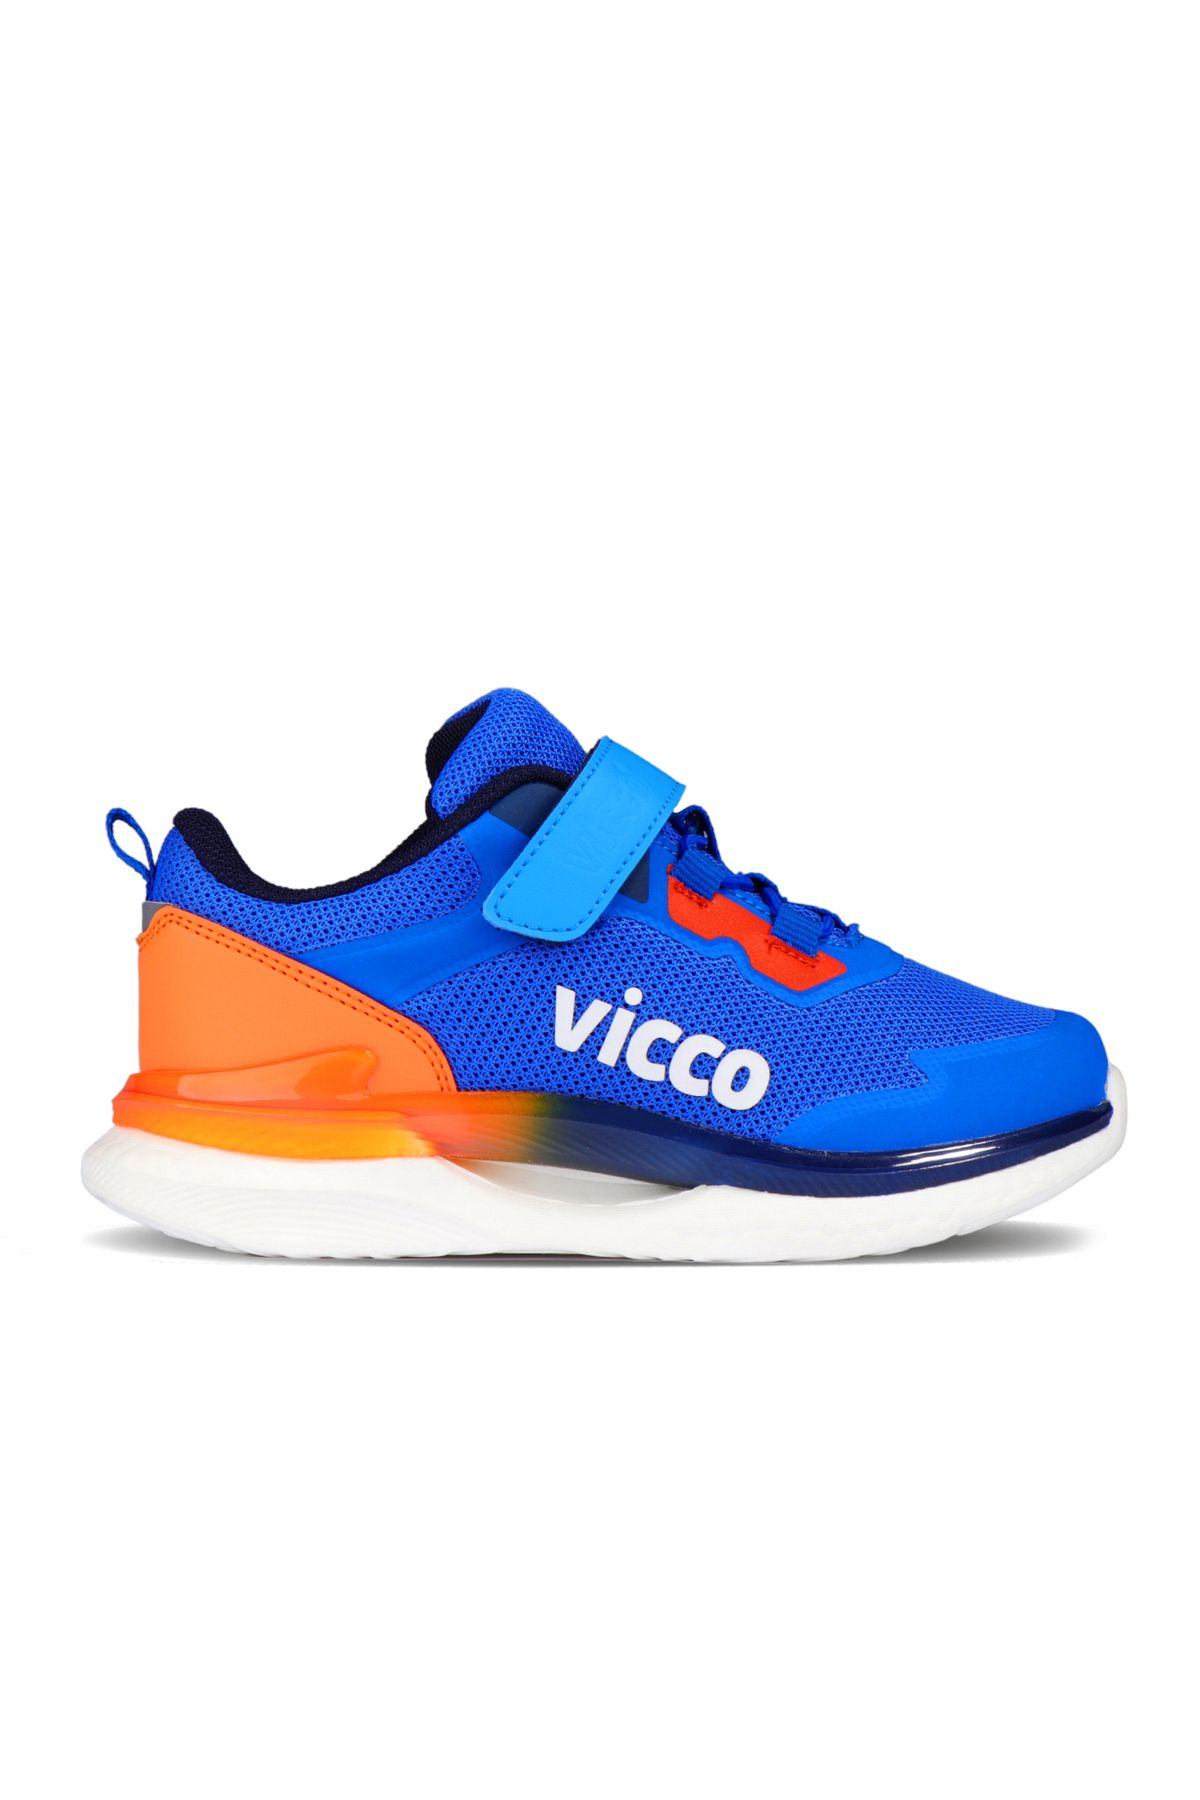 Vicco Yancy Patik Phylon Spor Ayakkabı - Saks Mavi